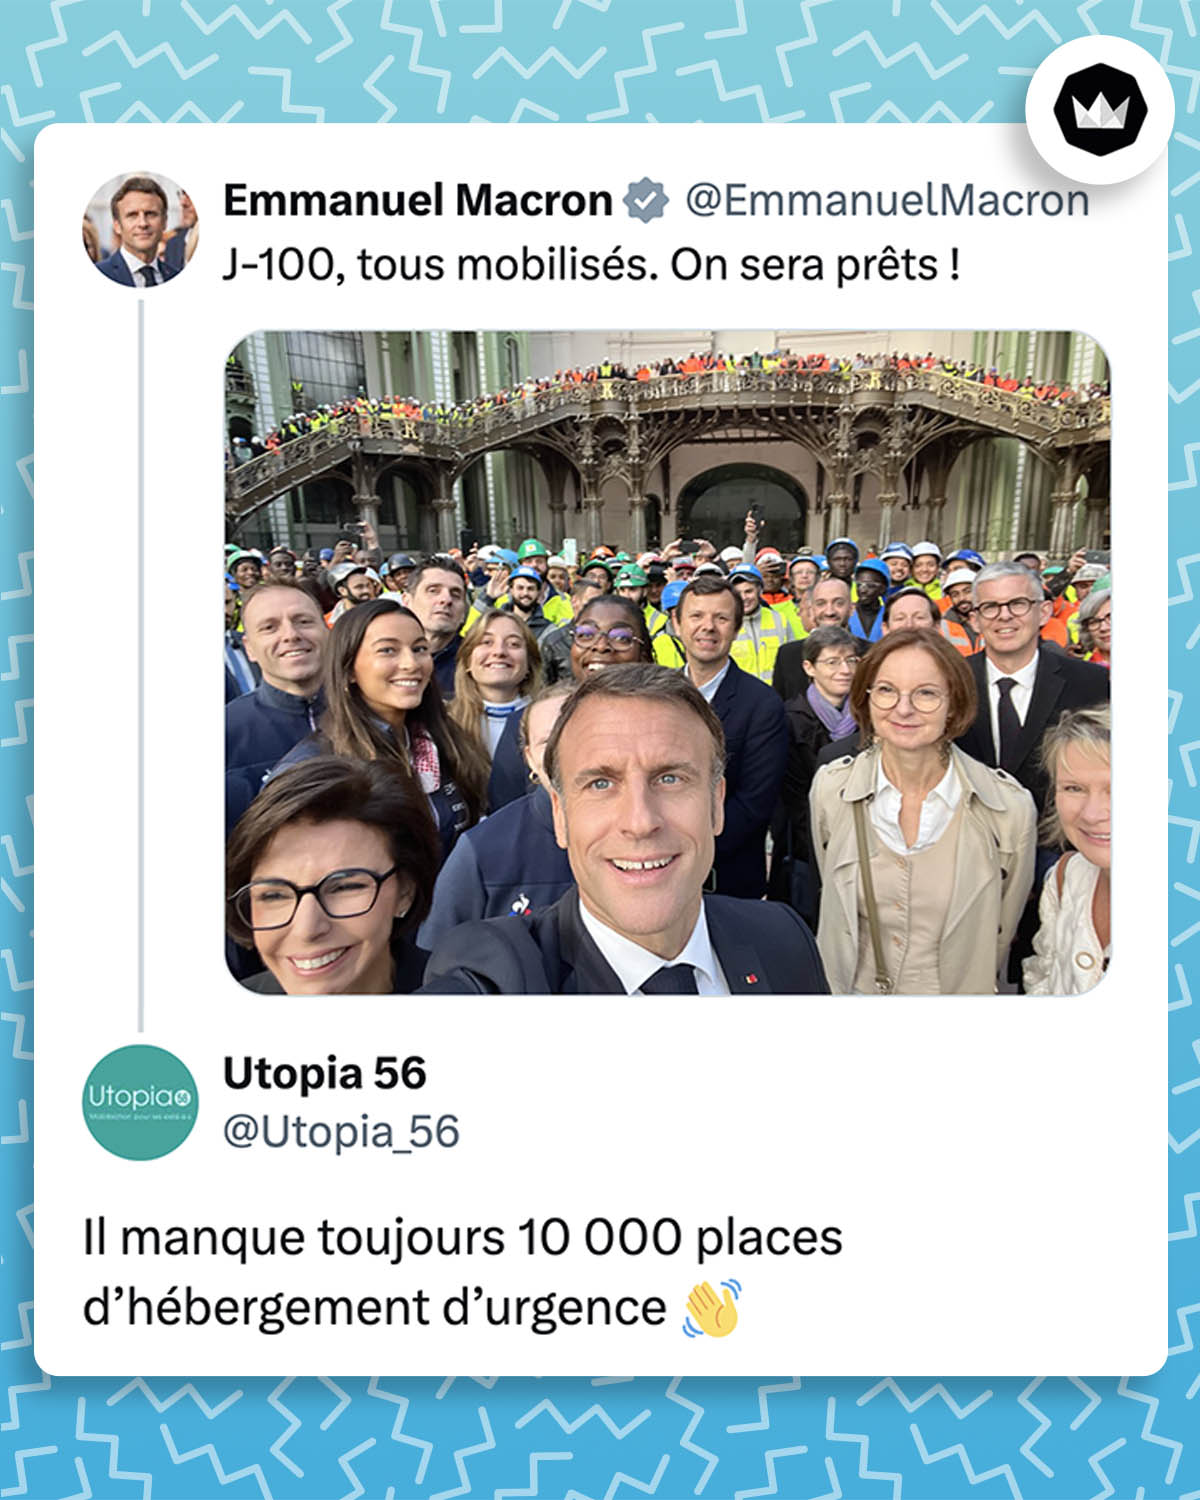 @EmmanuelMacron :
"J-100, tous mobilisés. On sera prêts !"
@Utopia_56 :
"Il manque toujours 10 000 places d’hébergement d’urgence 👋"